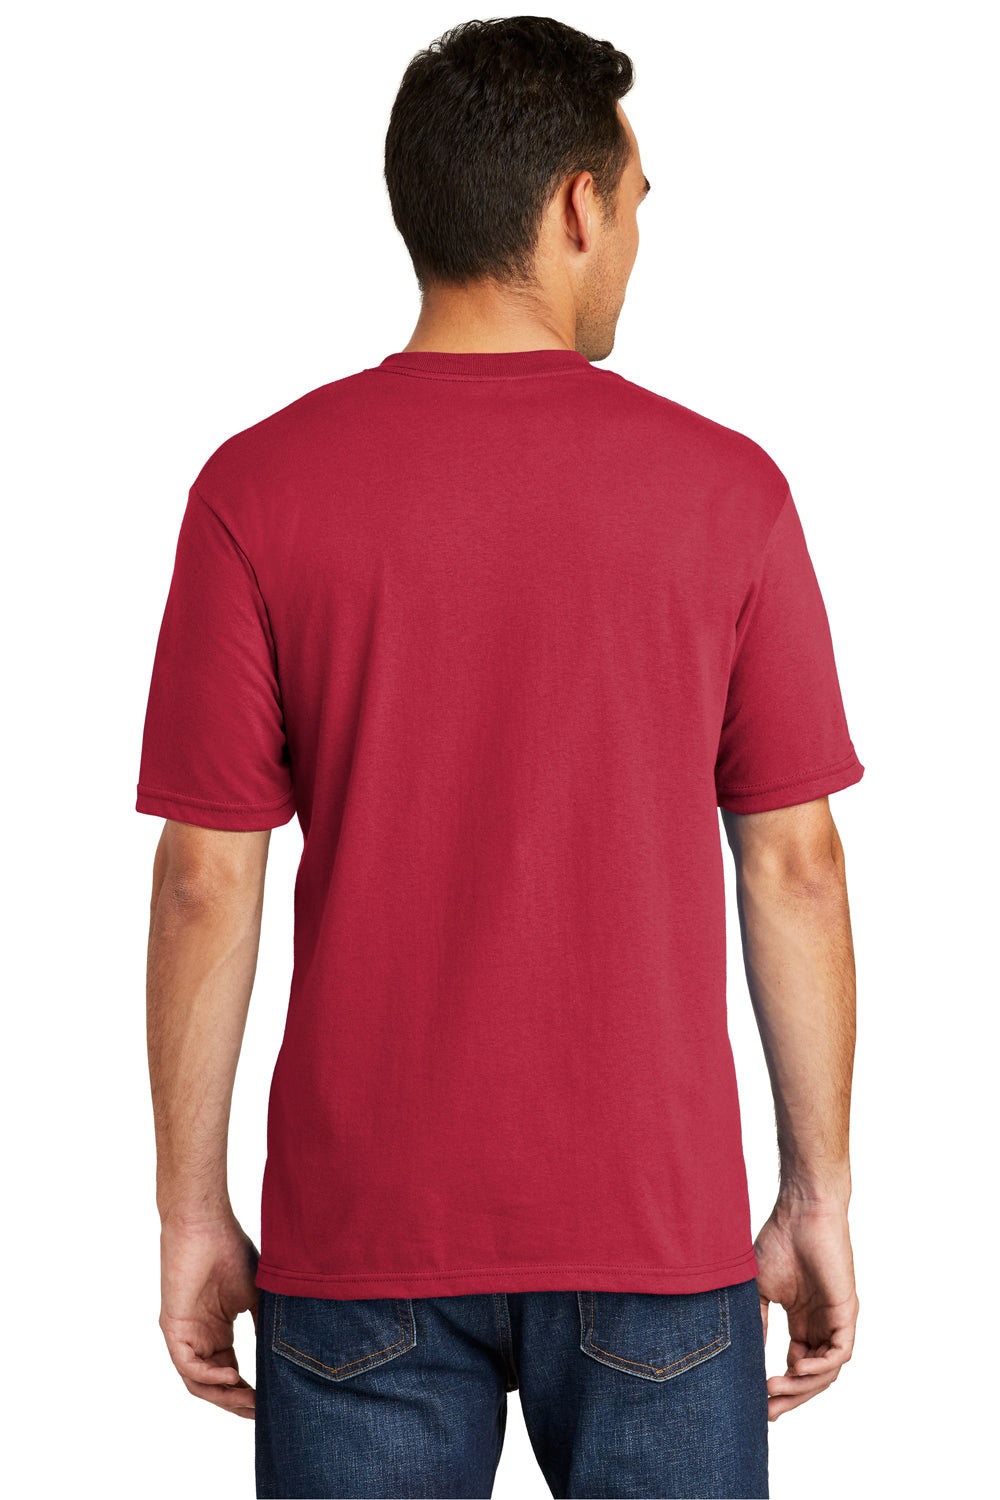 Port & Company USA100P Mens USA Made Short Sleeve Crewneck T-Shirt w/ Pocket Red Back